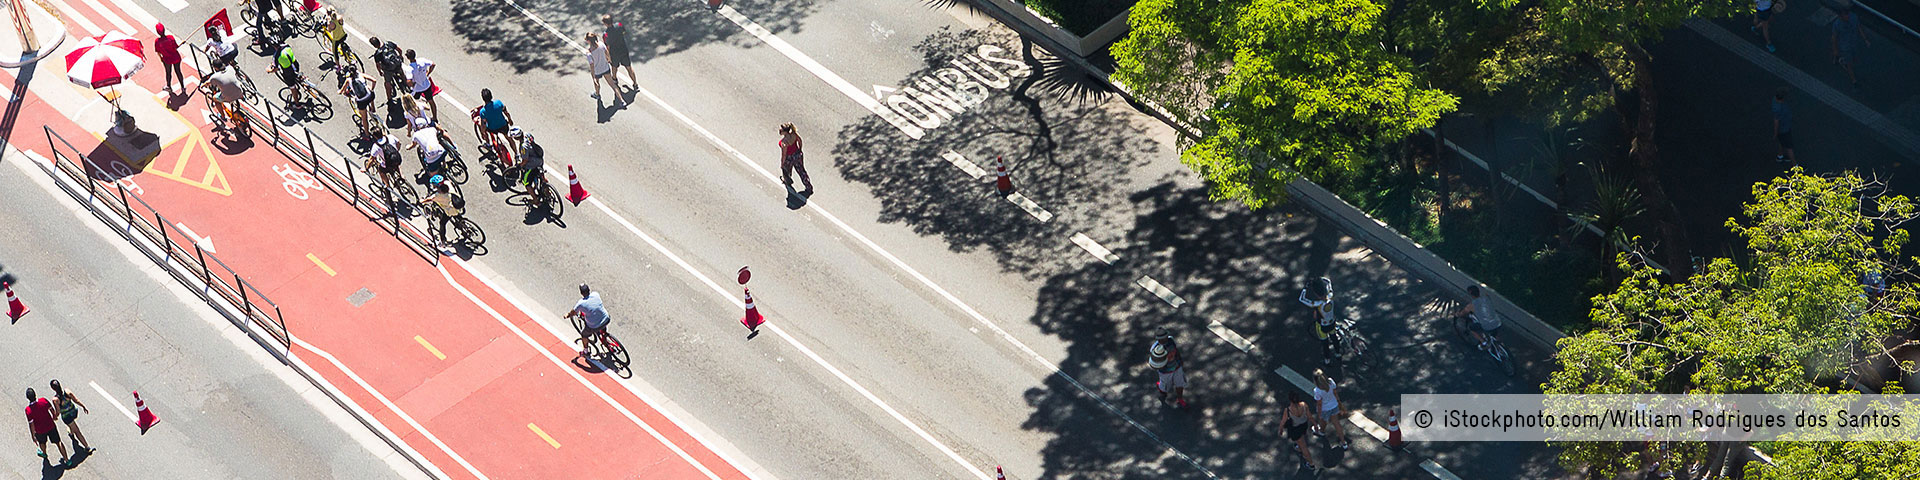 Blick von oben auf eine Straße mit rot markiertem Radweg, auf dem zahlreiche Menschen Fahrrad fahren. © iStockphoto.com/William Rodrigues dos Santos